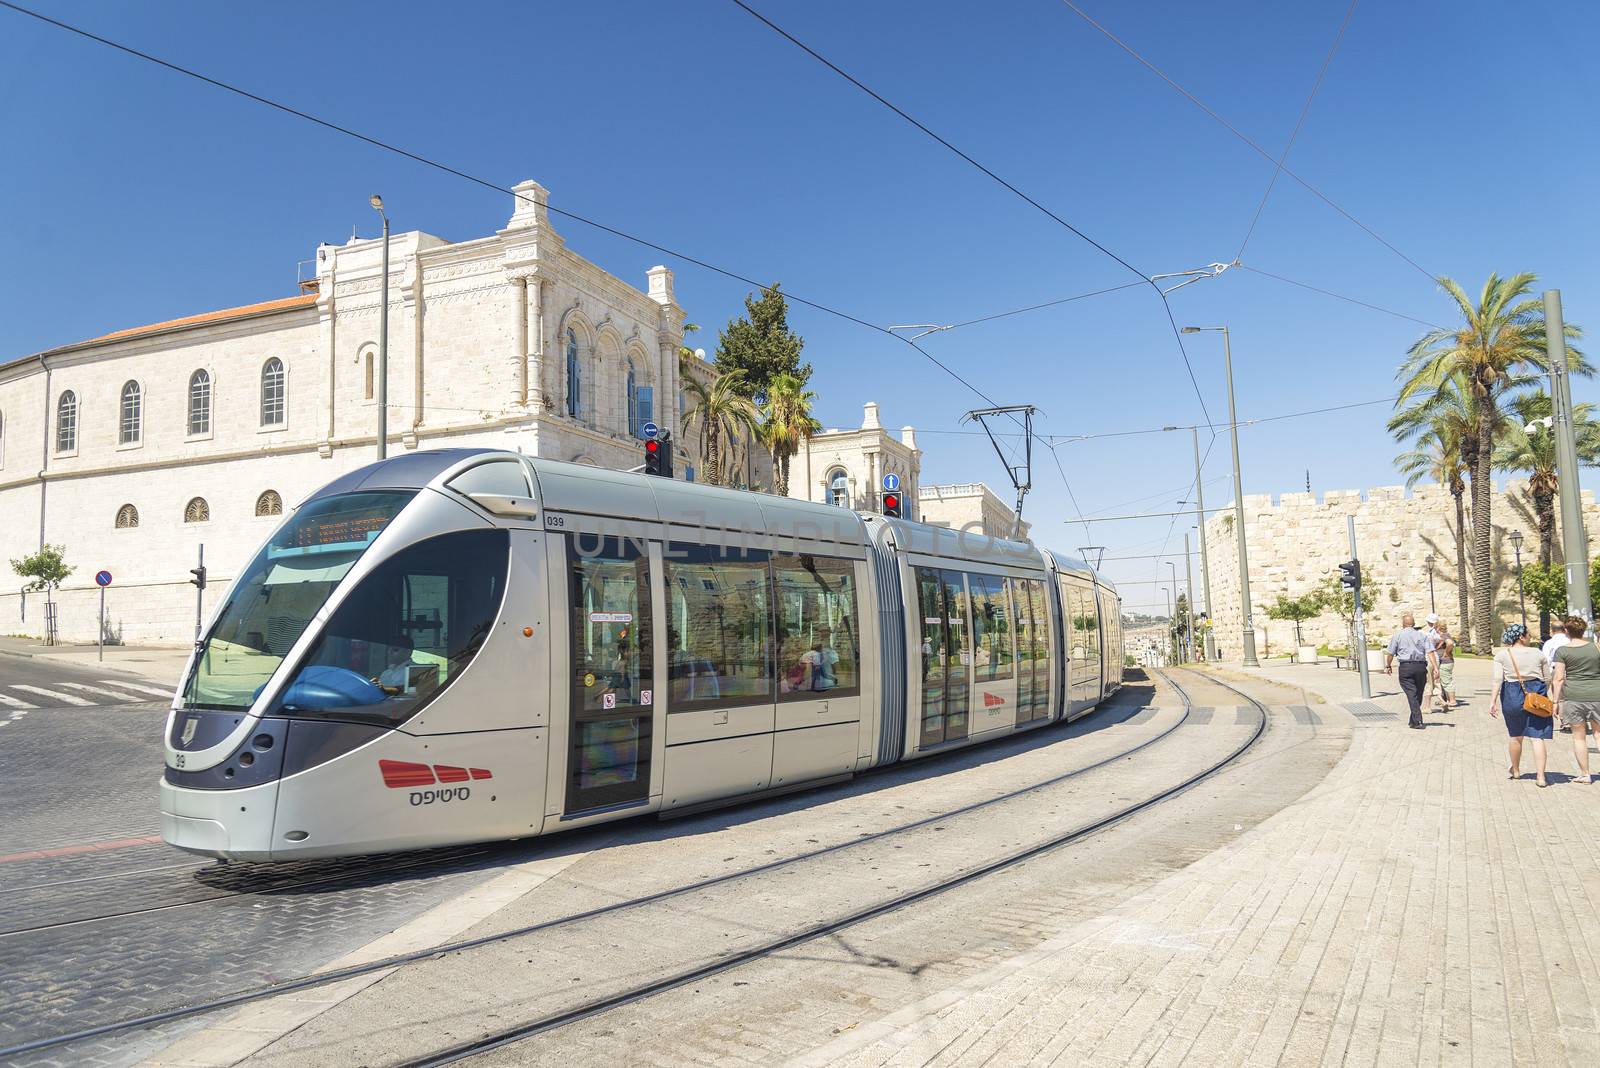 modern tram in central jerusalem israel by jackmalipan